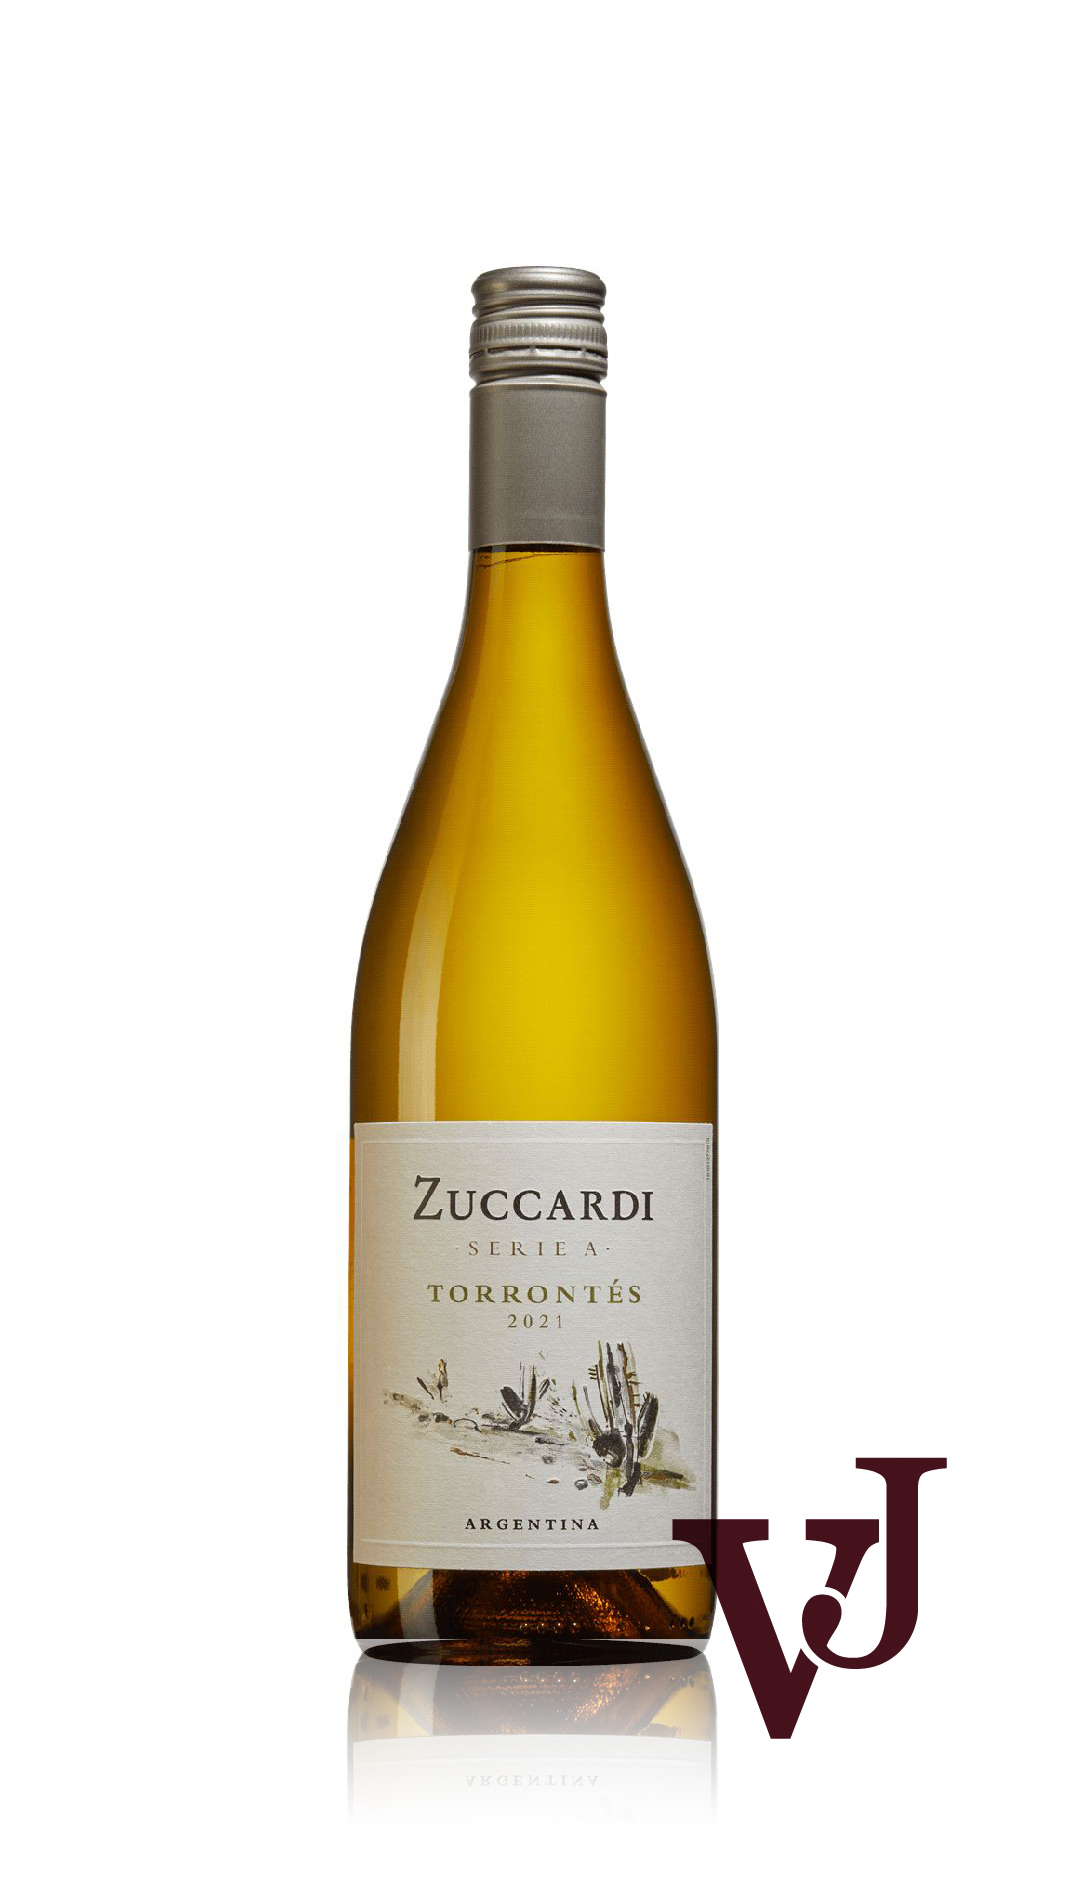 Vitt Vin - Zuccardi artikel nummer 270601 från producenten Familia Zuccardi från området Argentina